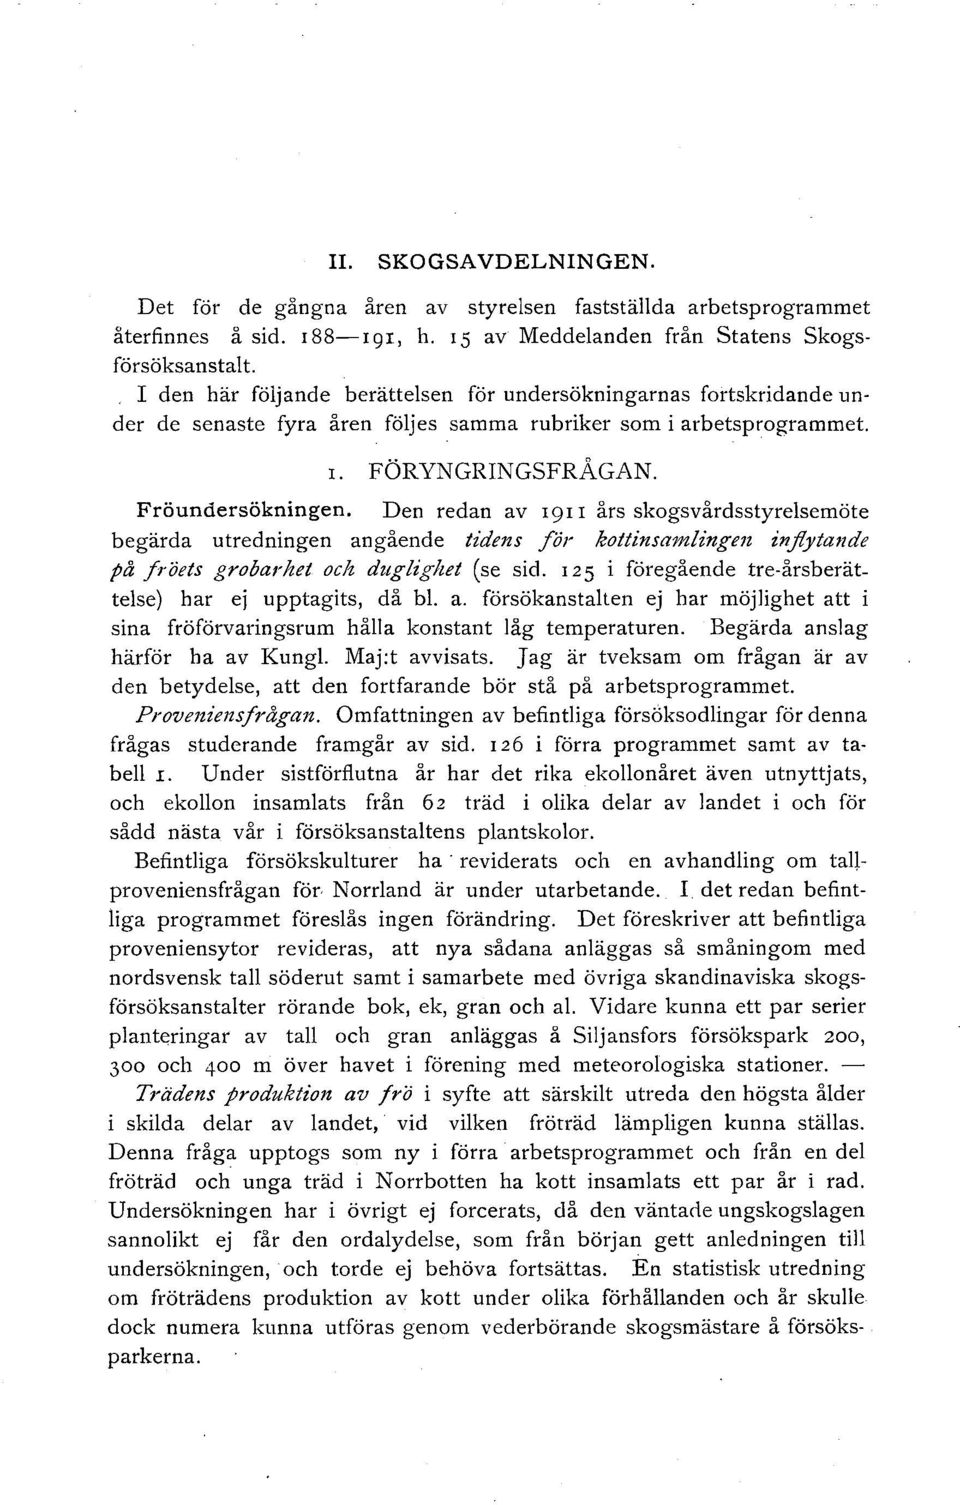 Den redan av 191 I års skogsvårdsstyresemöte begärda utredningen angående tidens för kottinsamingen infytande på fröets grobarhet och dugigut (se sid.